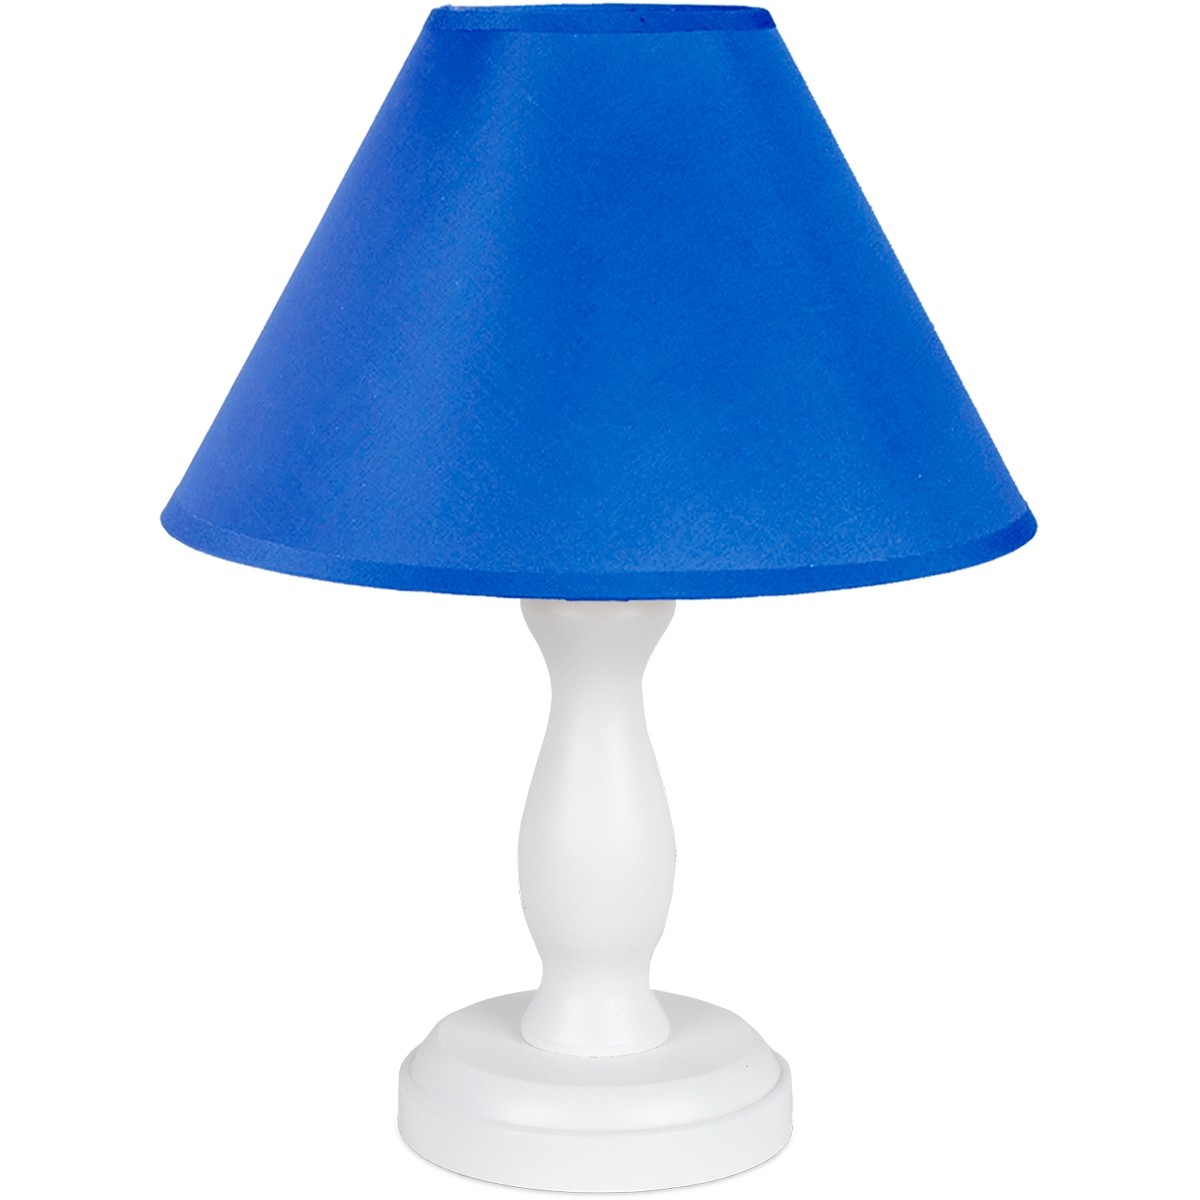 Tischlampe für Kinder  - Stefi (blau)